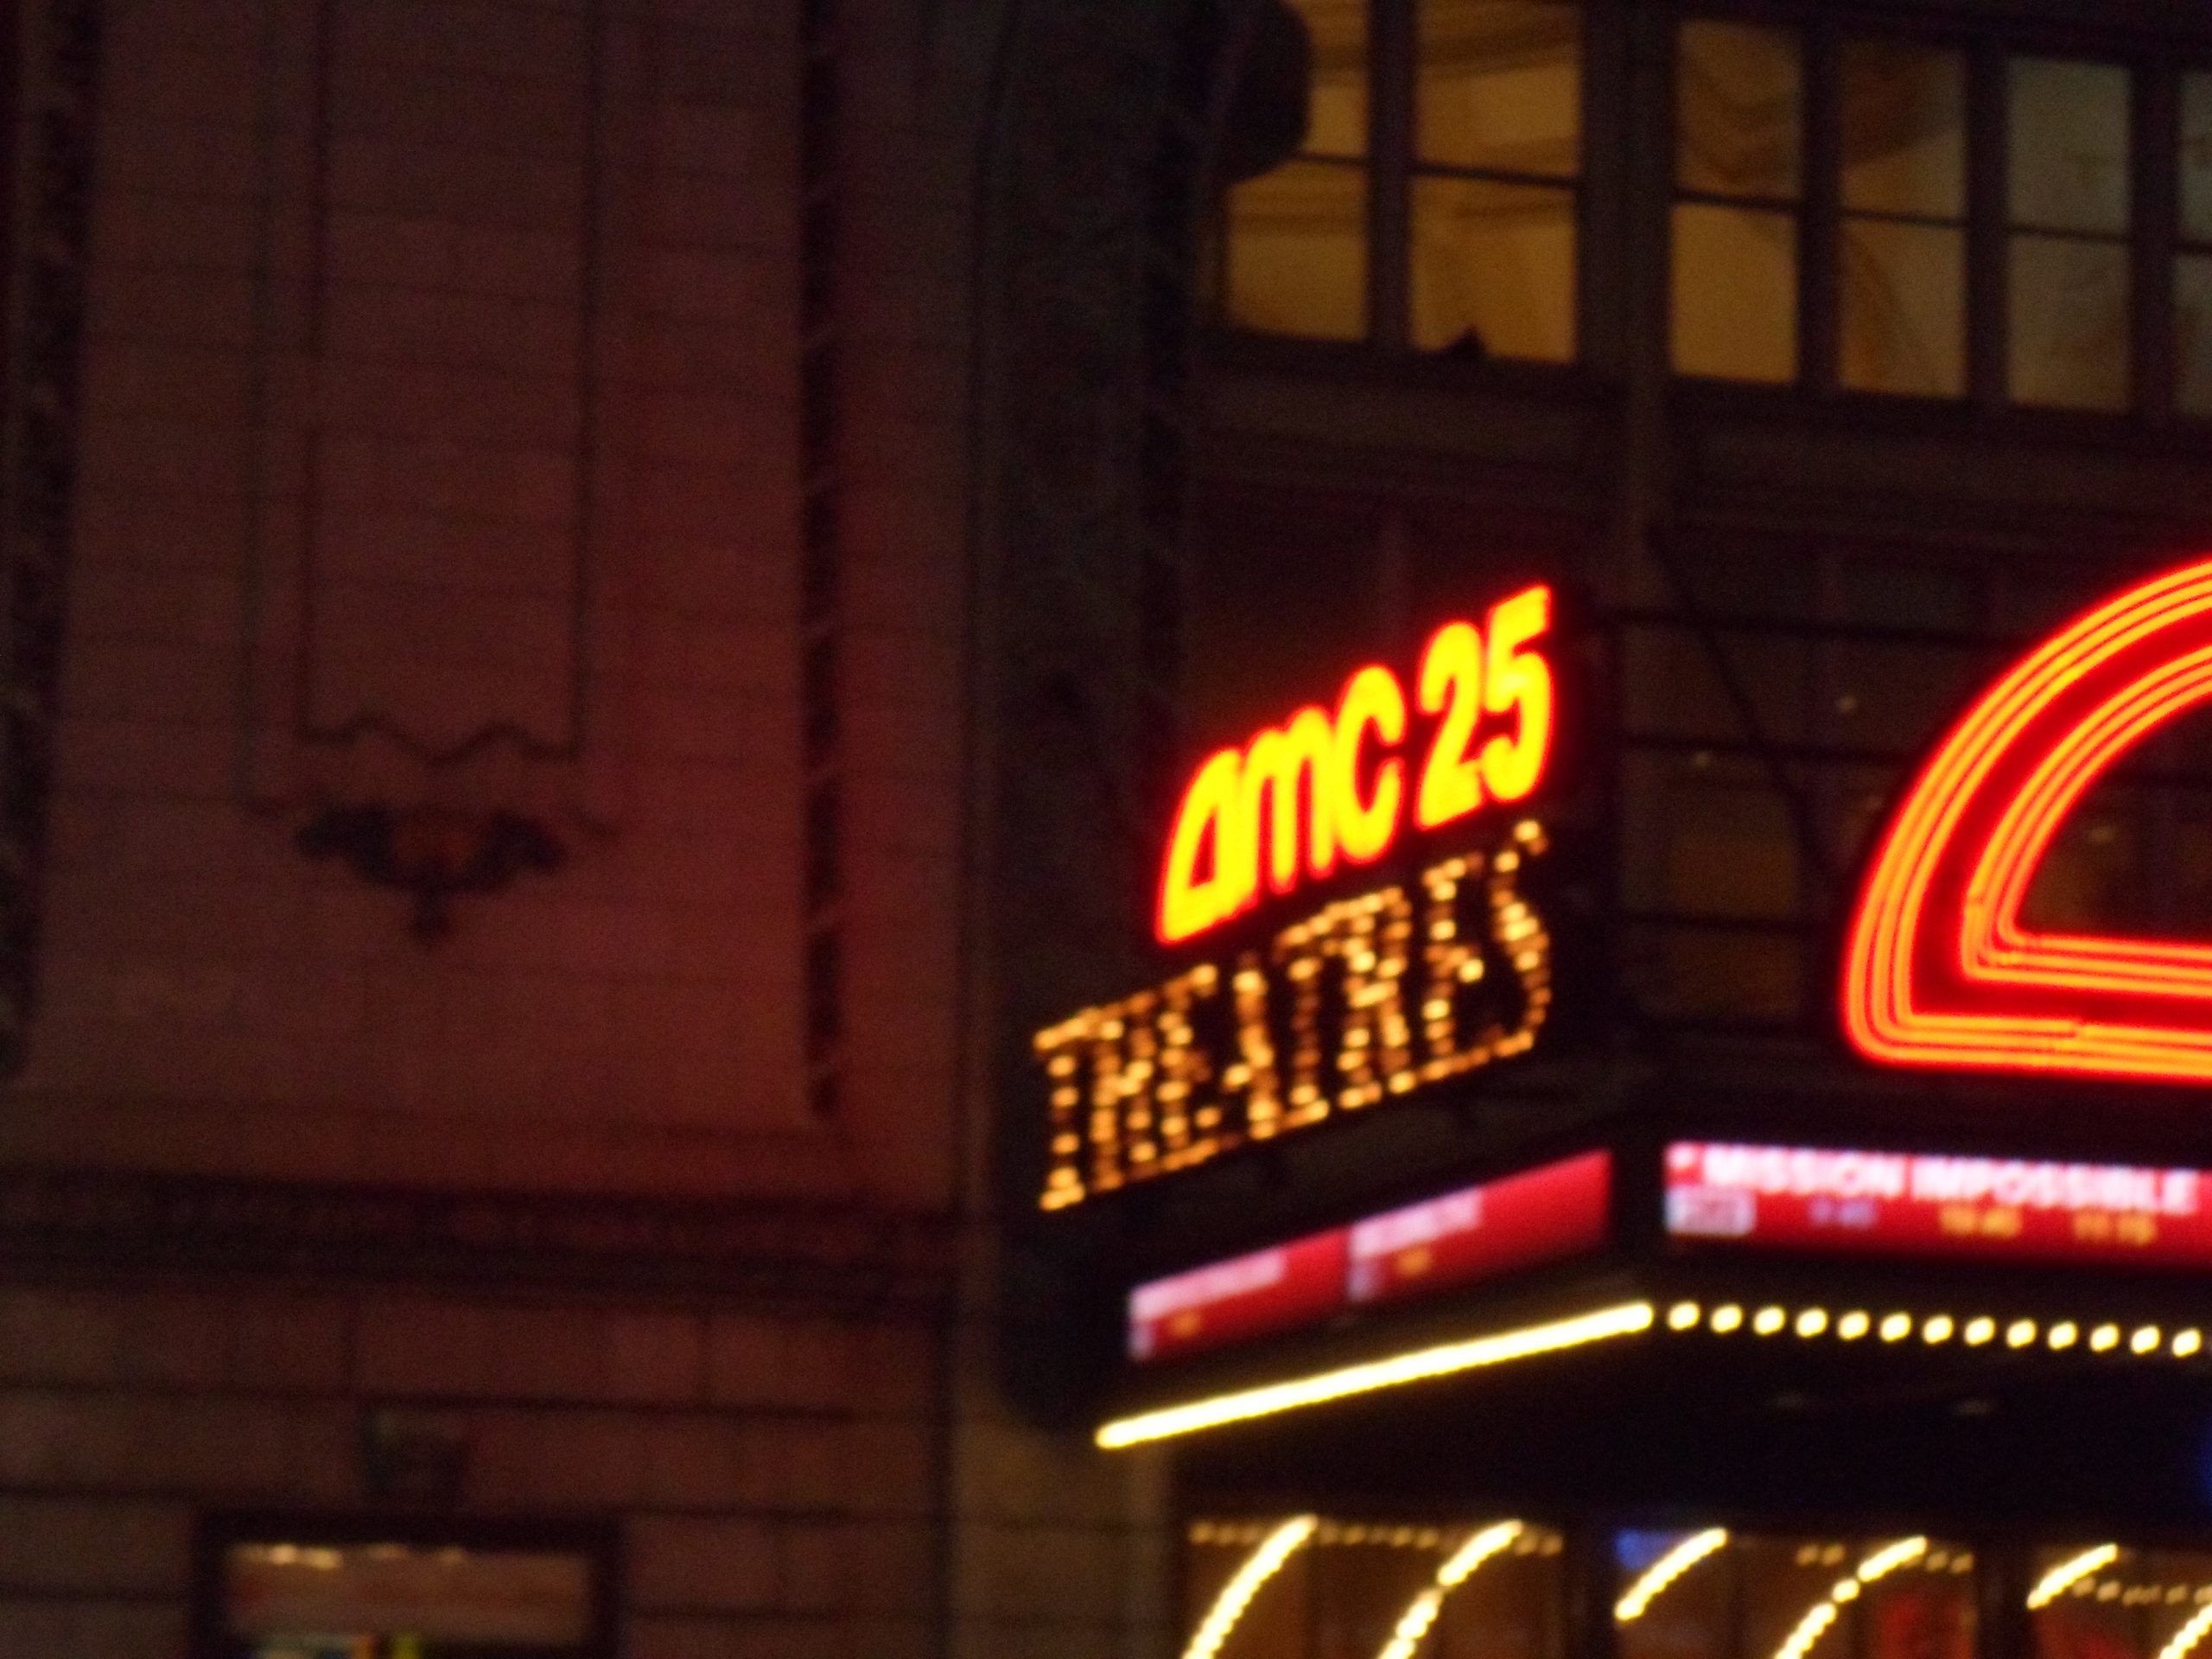 AMC Empire 25, AMC Theatres, box office